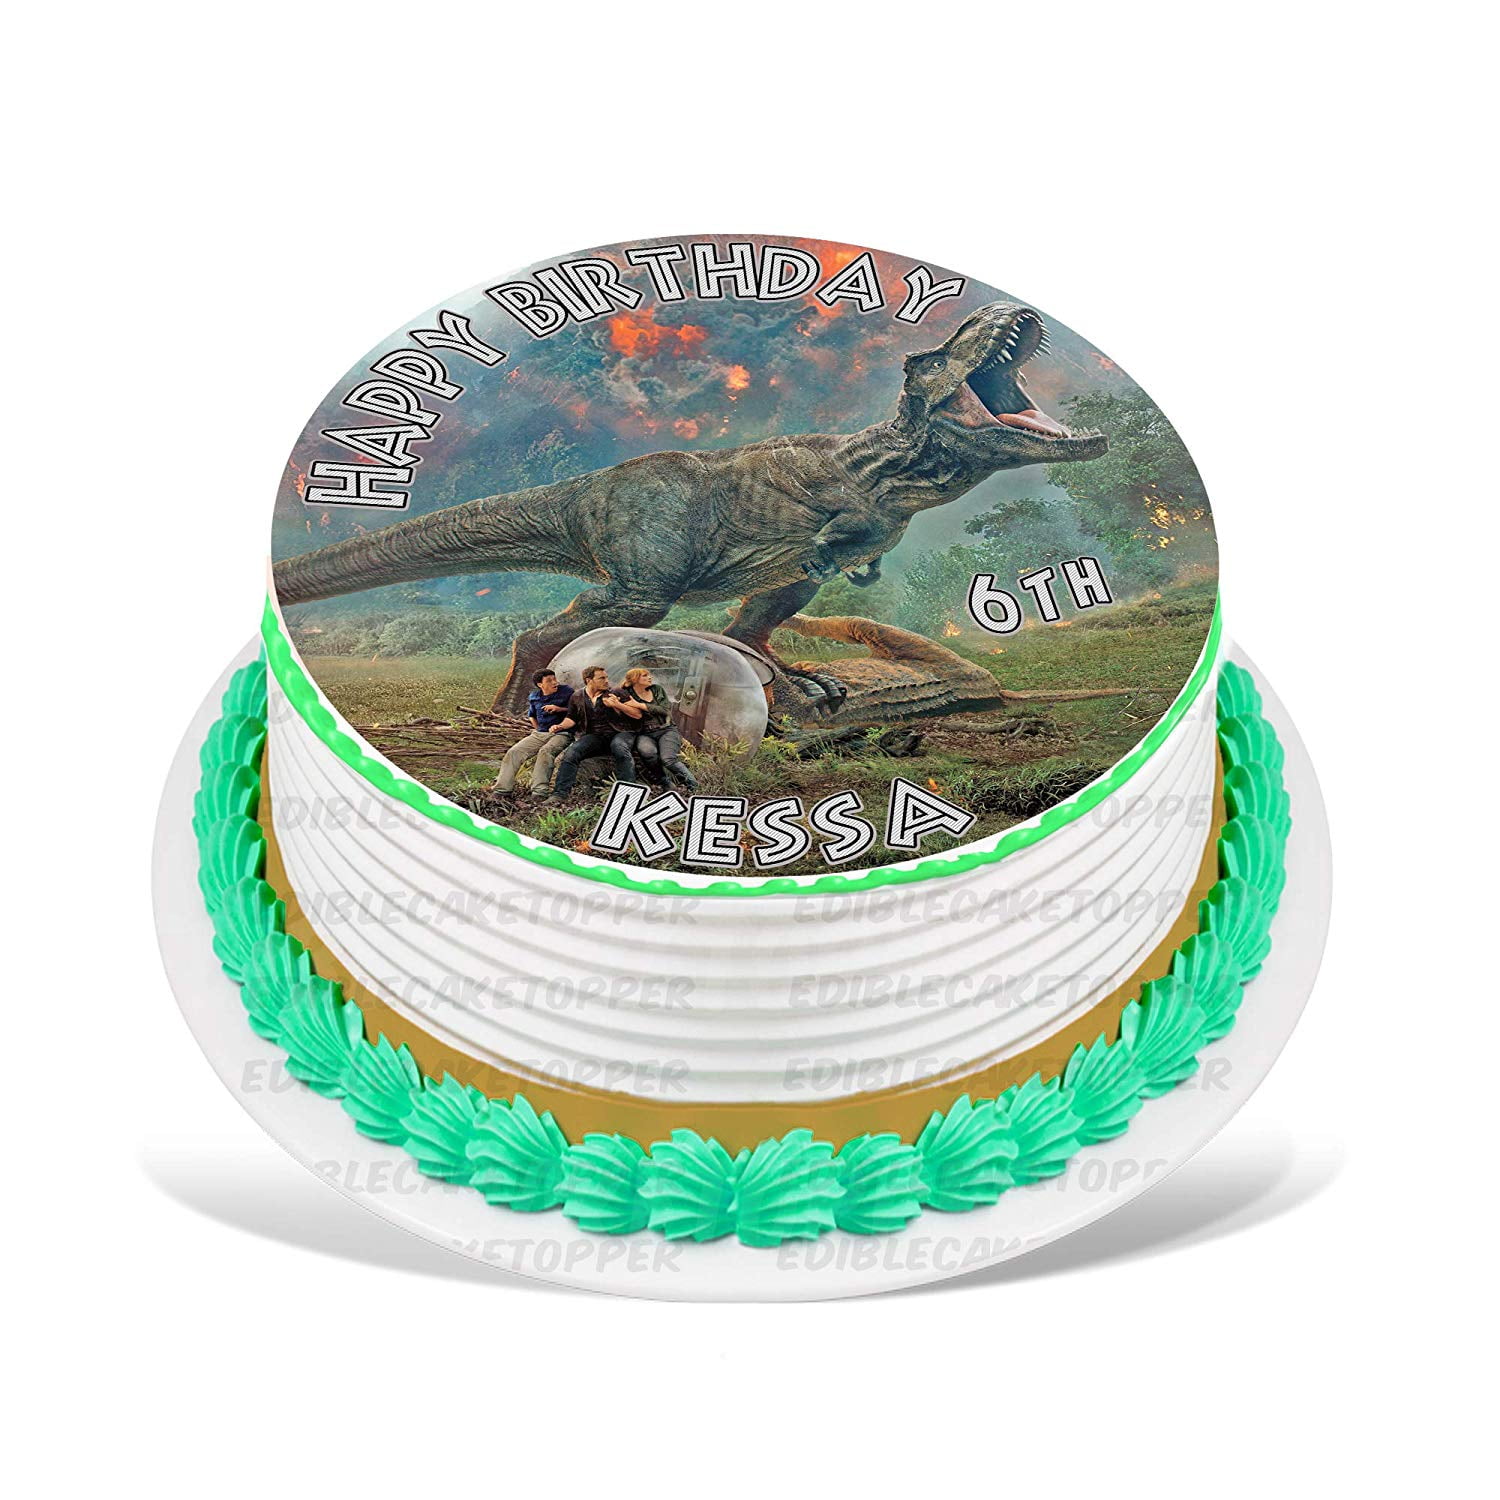 Dinosaur birthday party: Geometric dinosaur party decor, cake